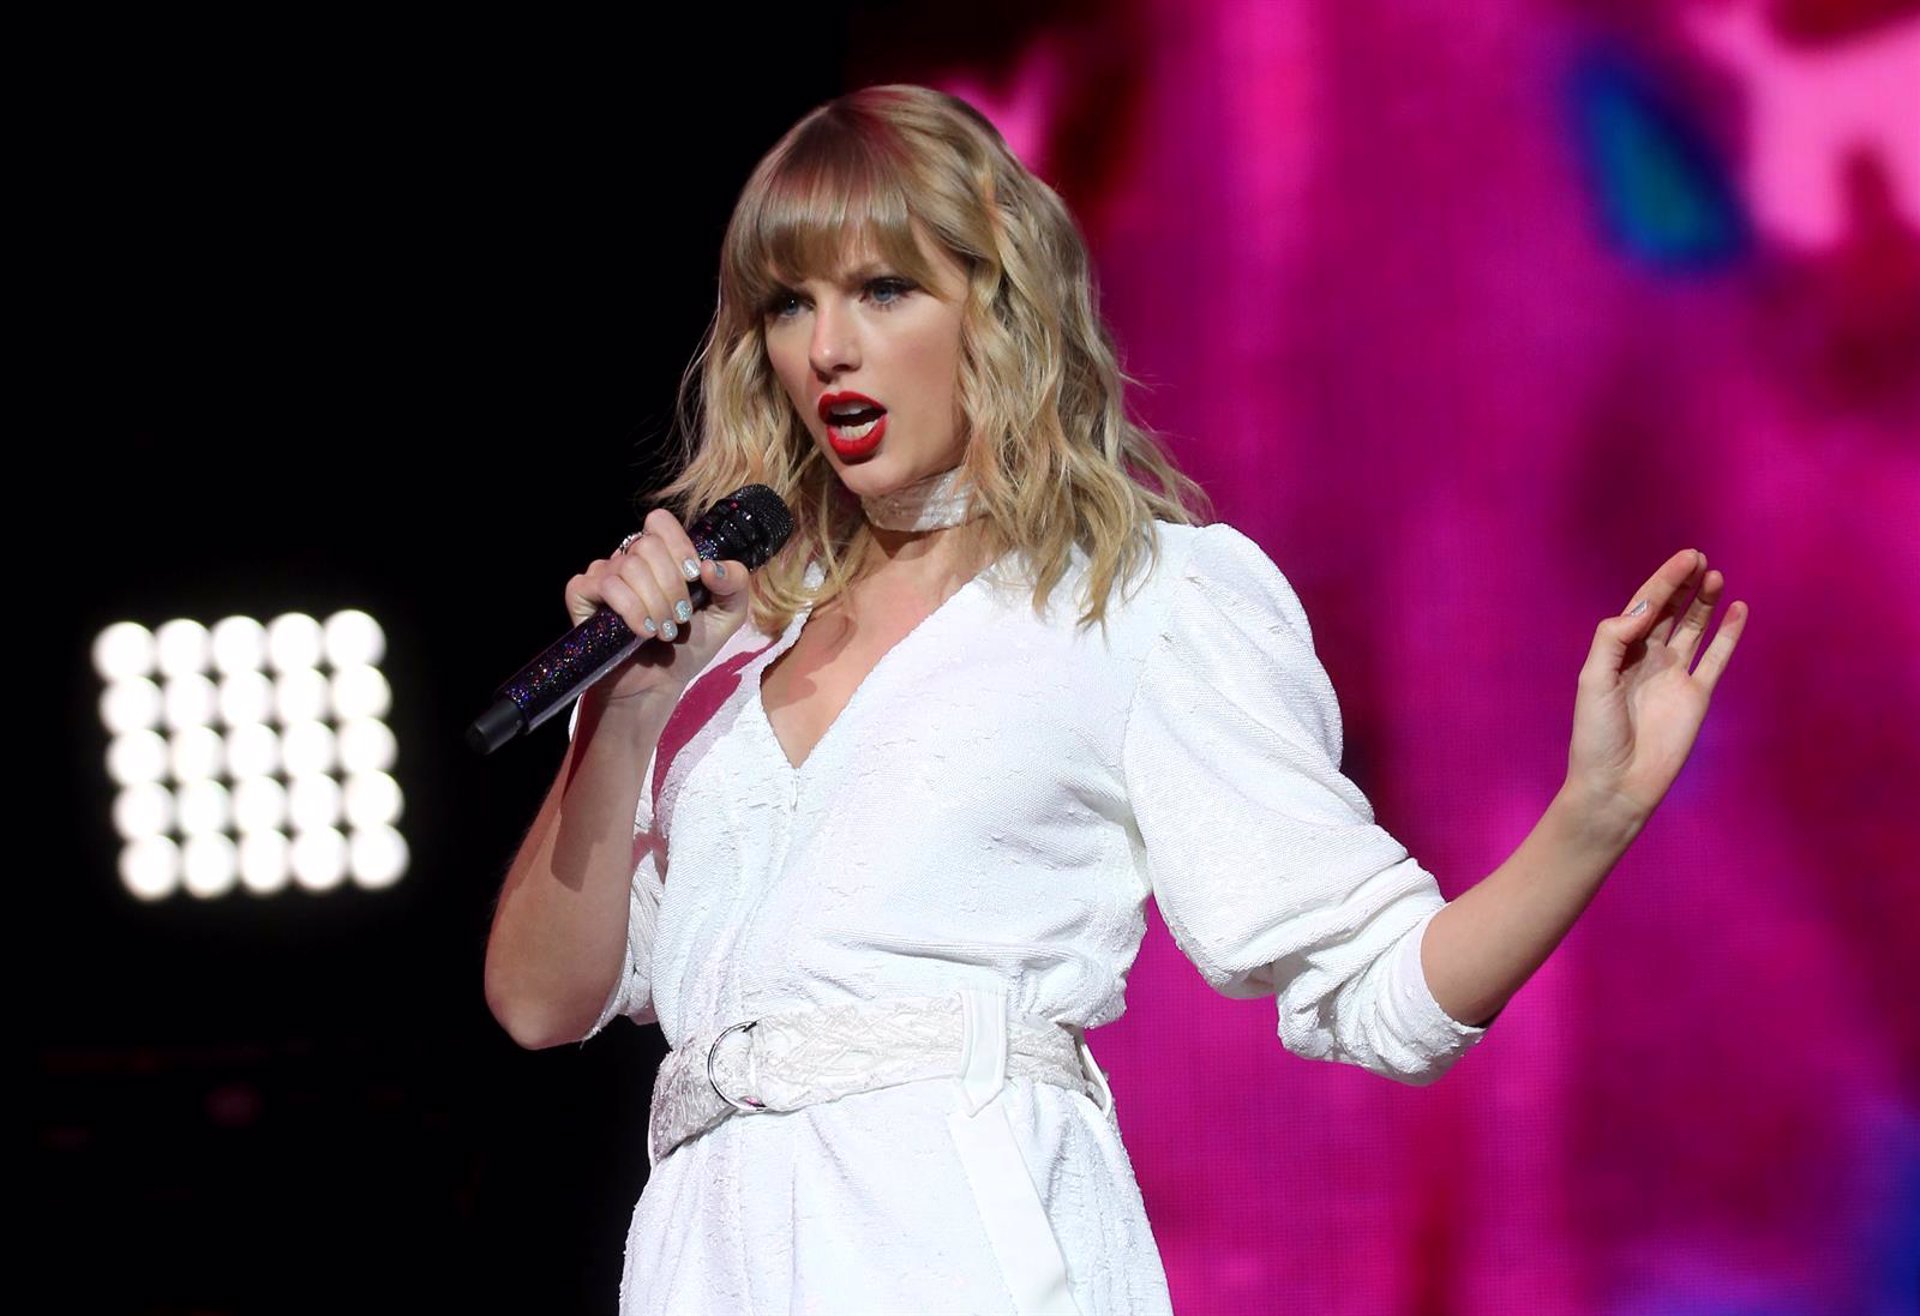 Entradas del concierto de Taylor Swift superan el sold out en menos de tres horas